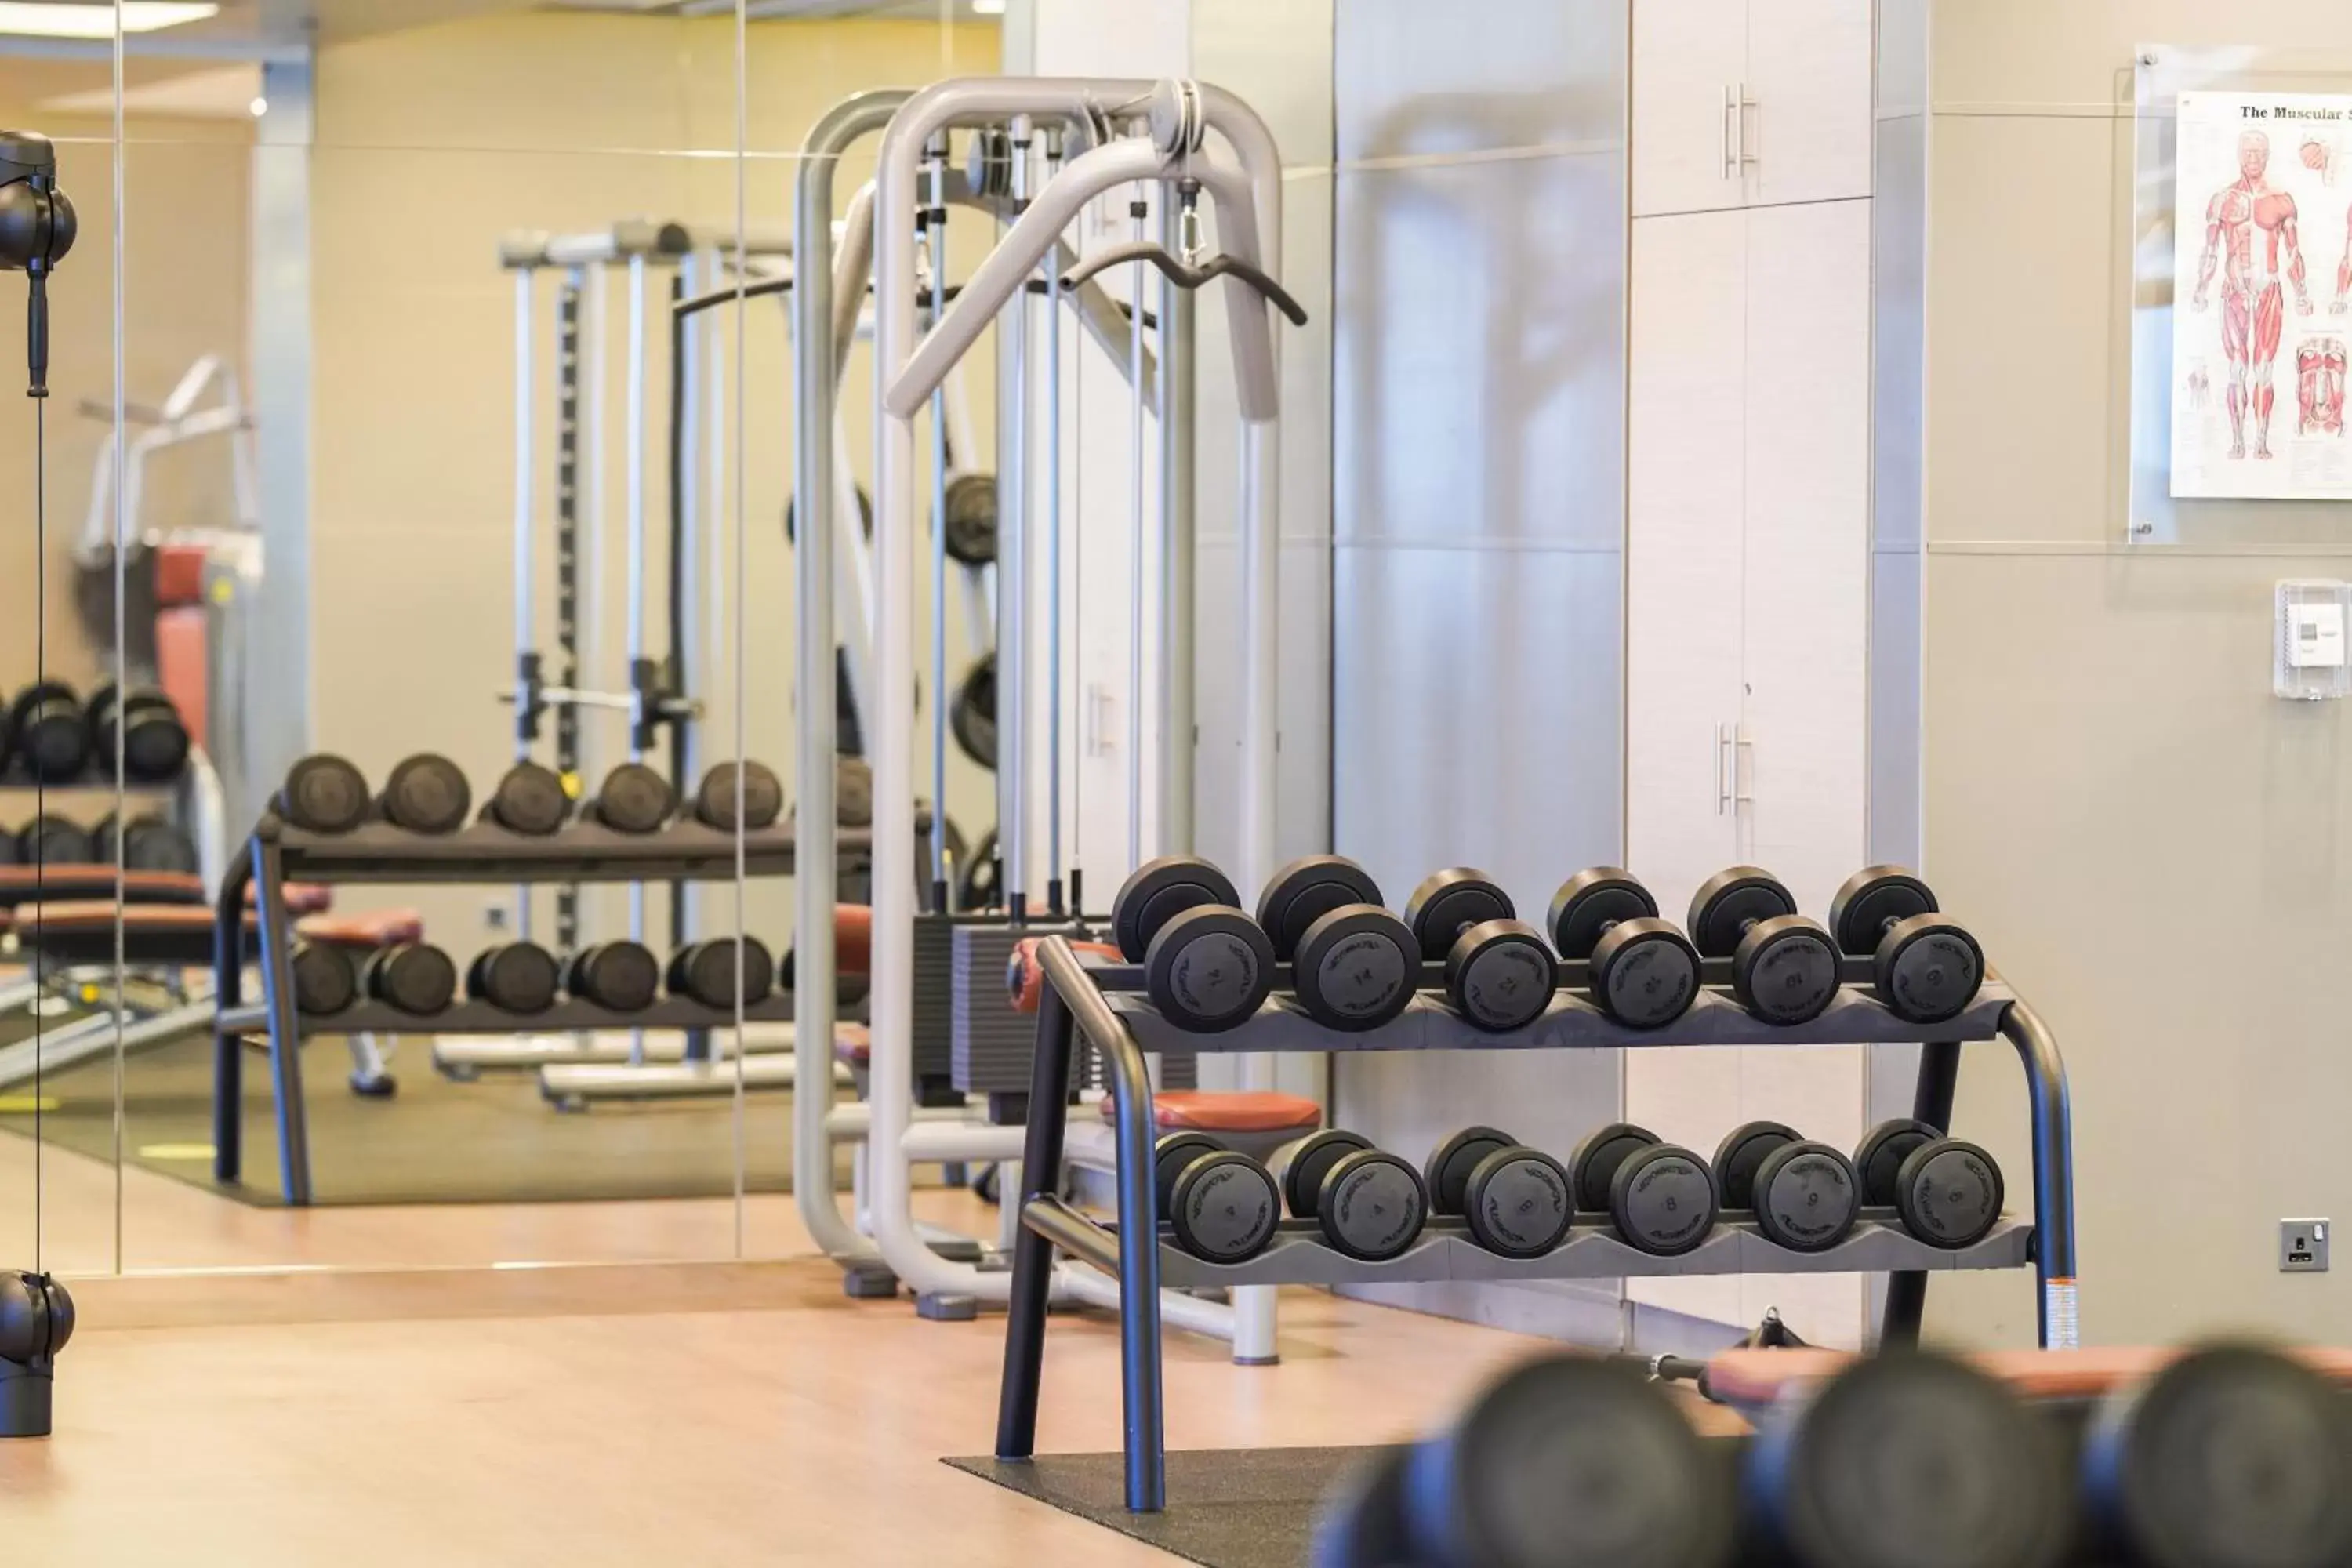 Fitness centre/facilities, Fitness Center/Facilities in Hyatt Regency Dubai Creek Heights